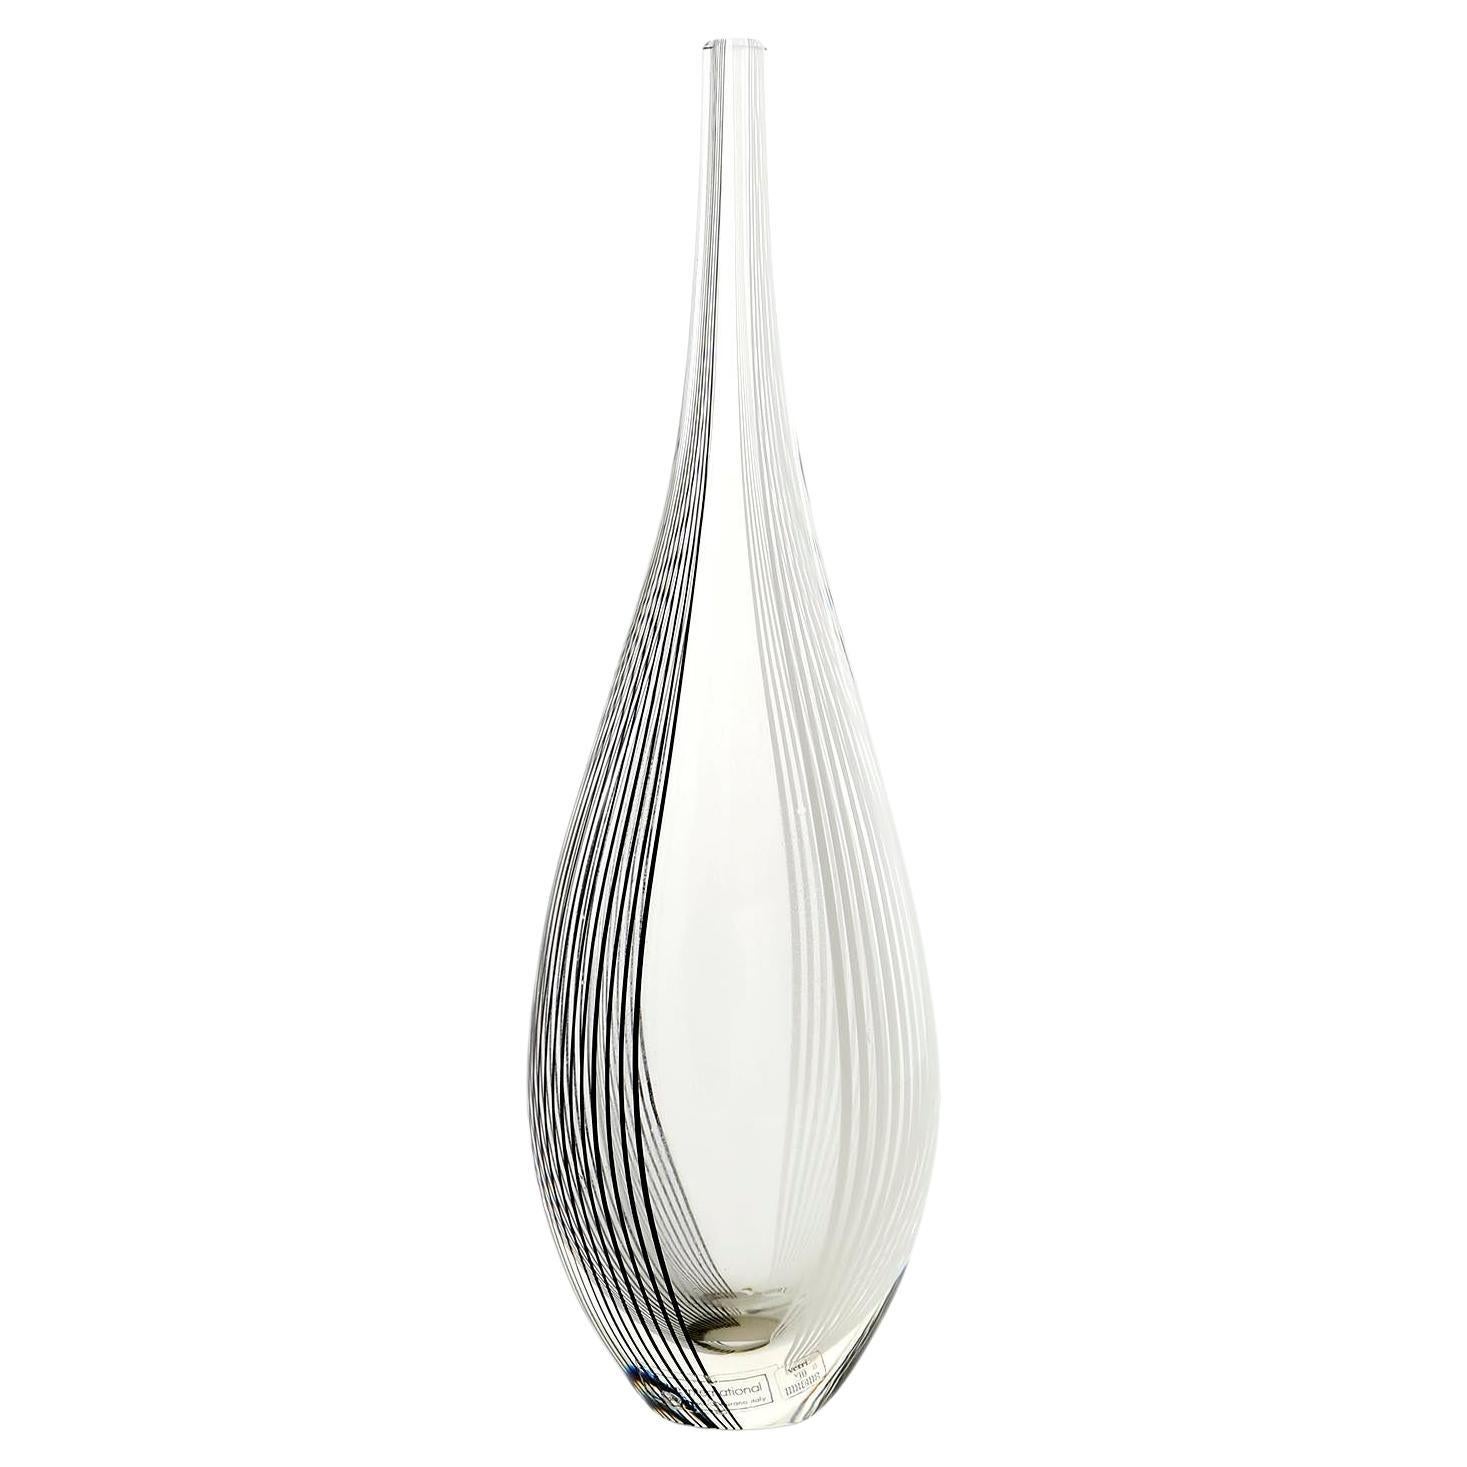 Vase Lino Tagliapietra für Effet, Italien, schwarz-weiß gestreiftes Klarglas, 1987